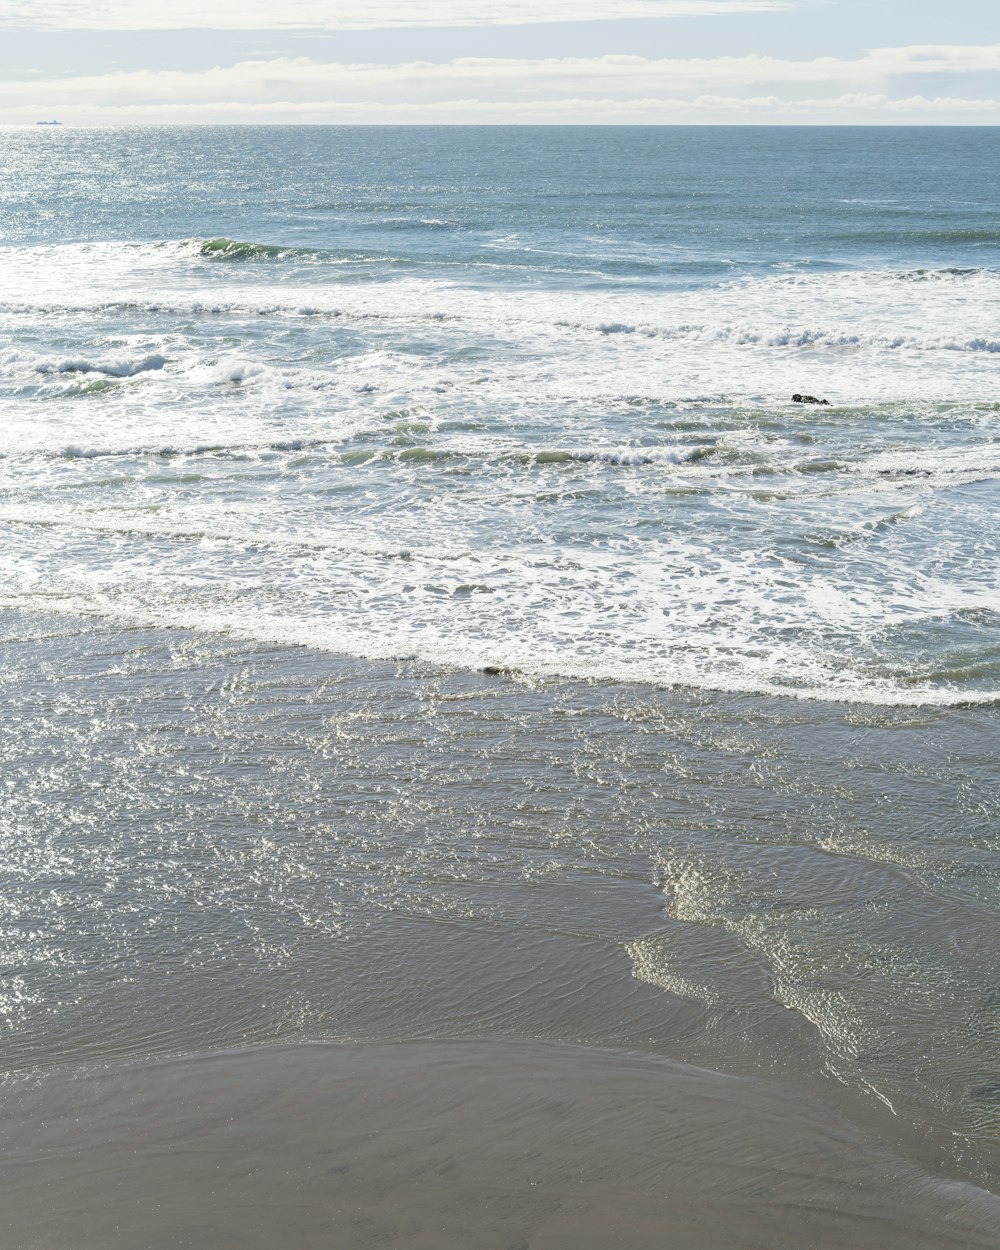 Les vagues de la mer s’écrasent sur le rivage pendant la journée